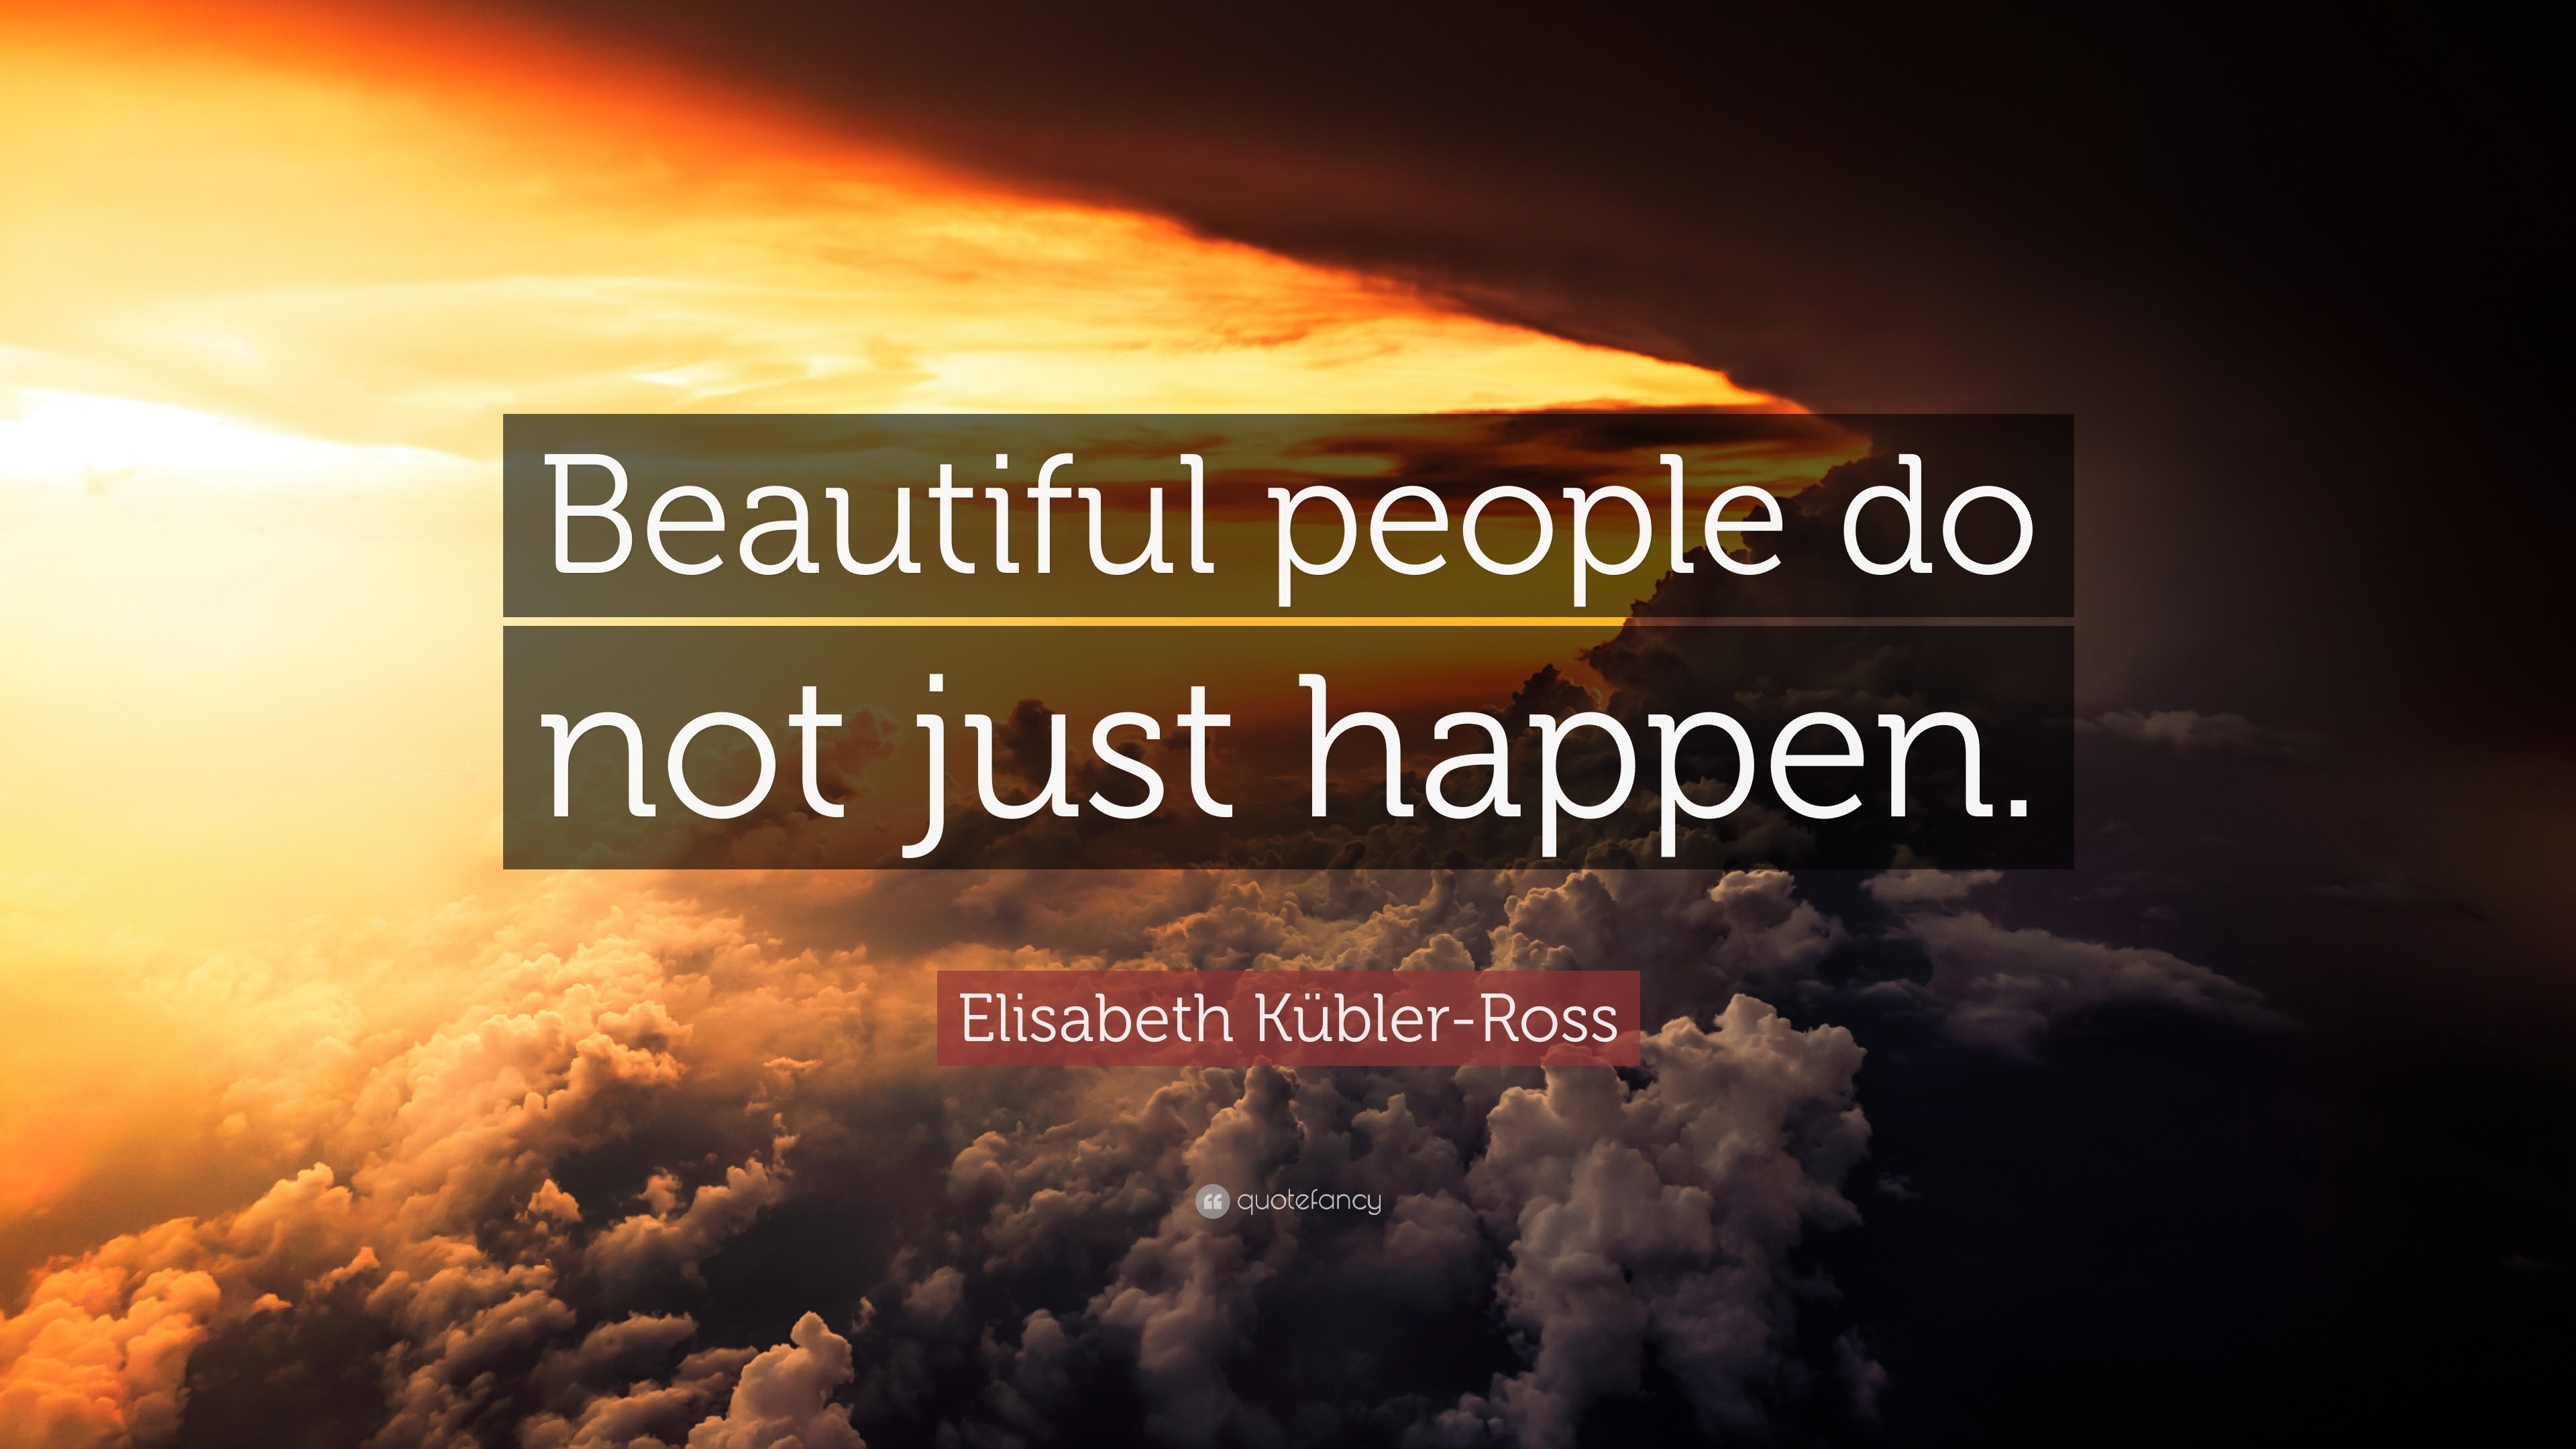 Elisabeth Kübler-Ross Quote: “Beautiful people do not just happen.”